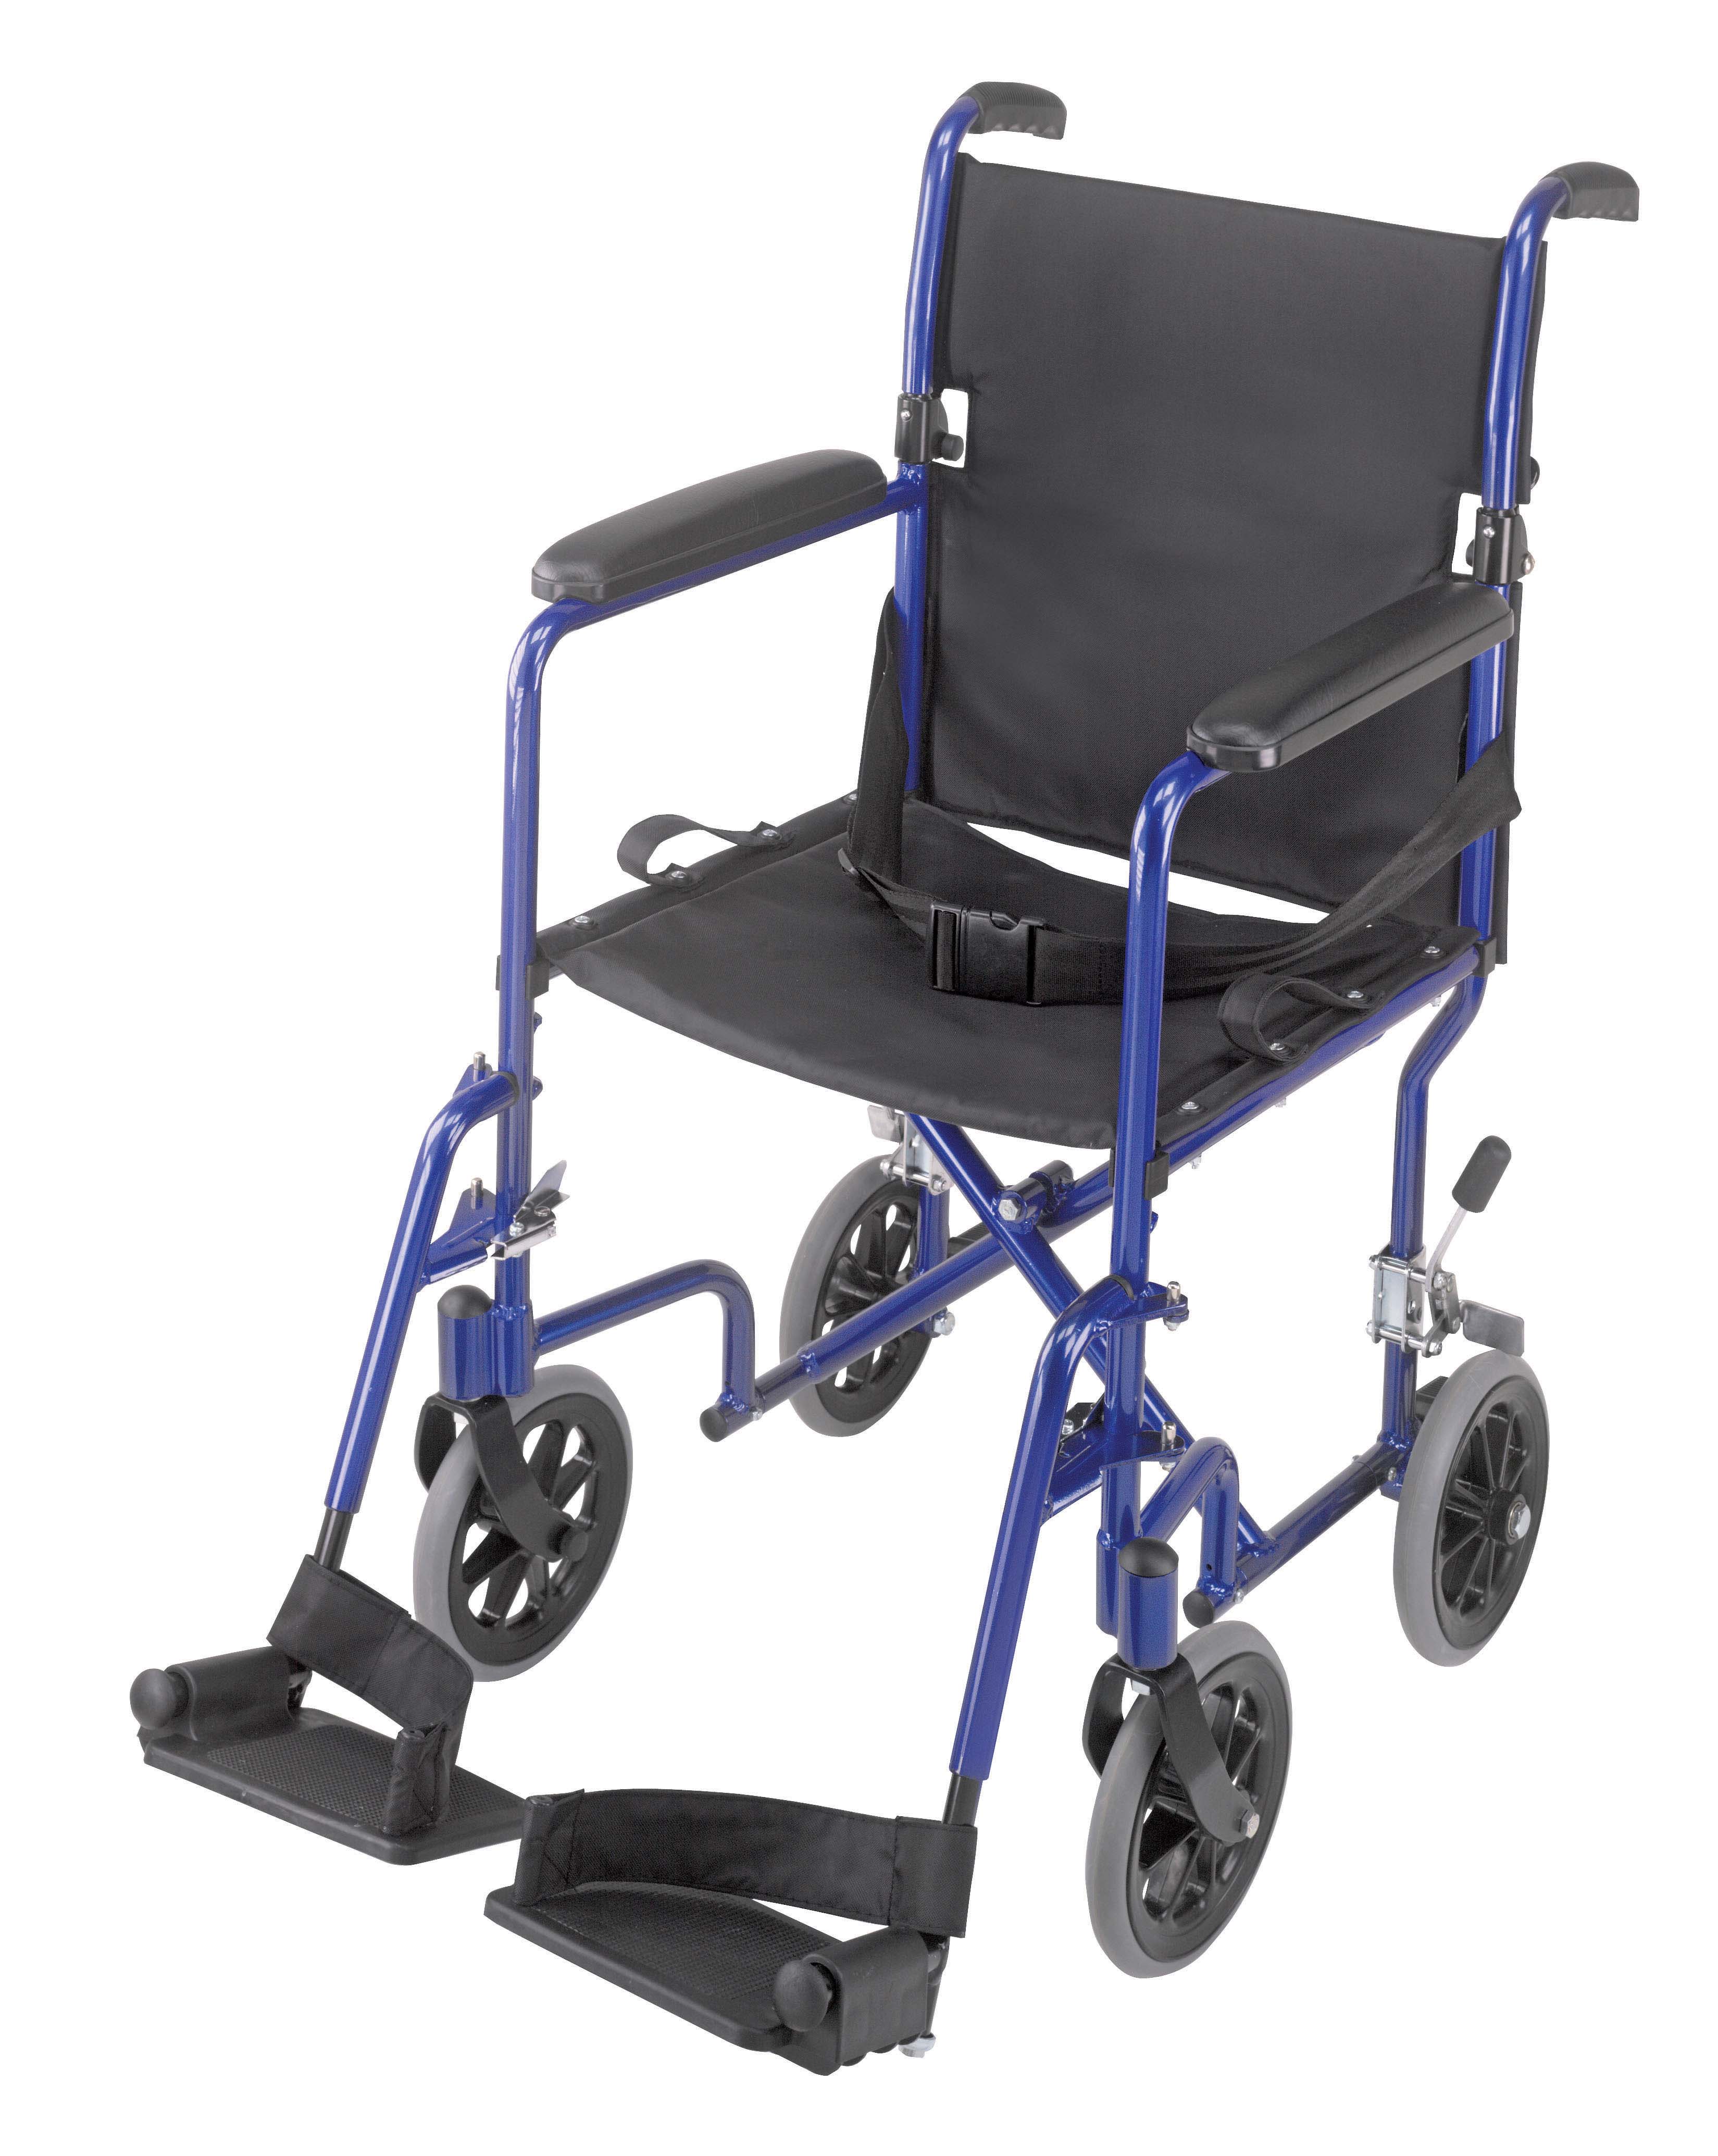 http://site.ambercity.com/images/mabis/19-ultra-lightweight-aluminum-transport-chair-royal-blue-501-1052-2100-lr.jpg